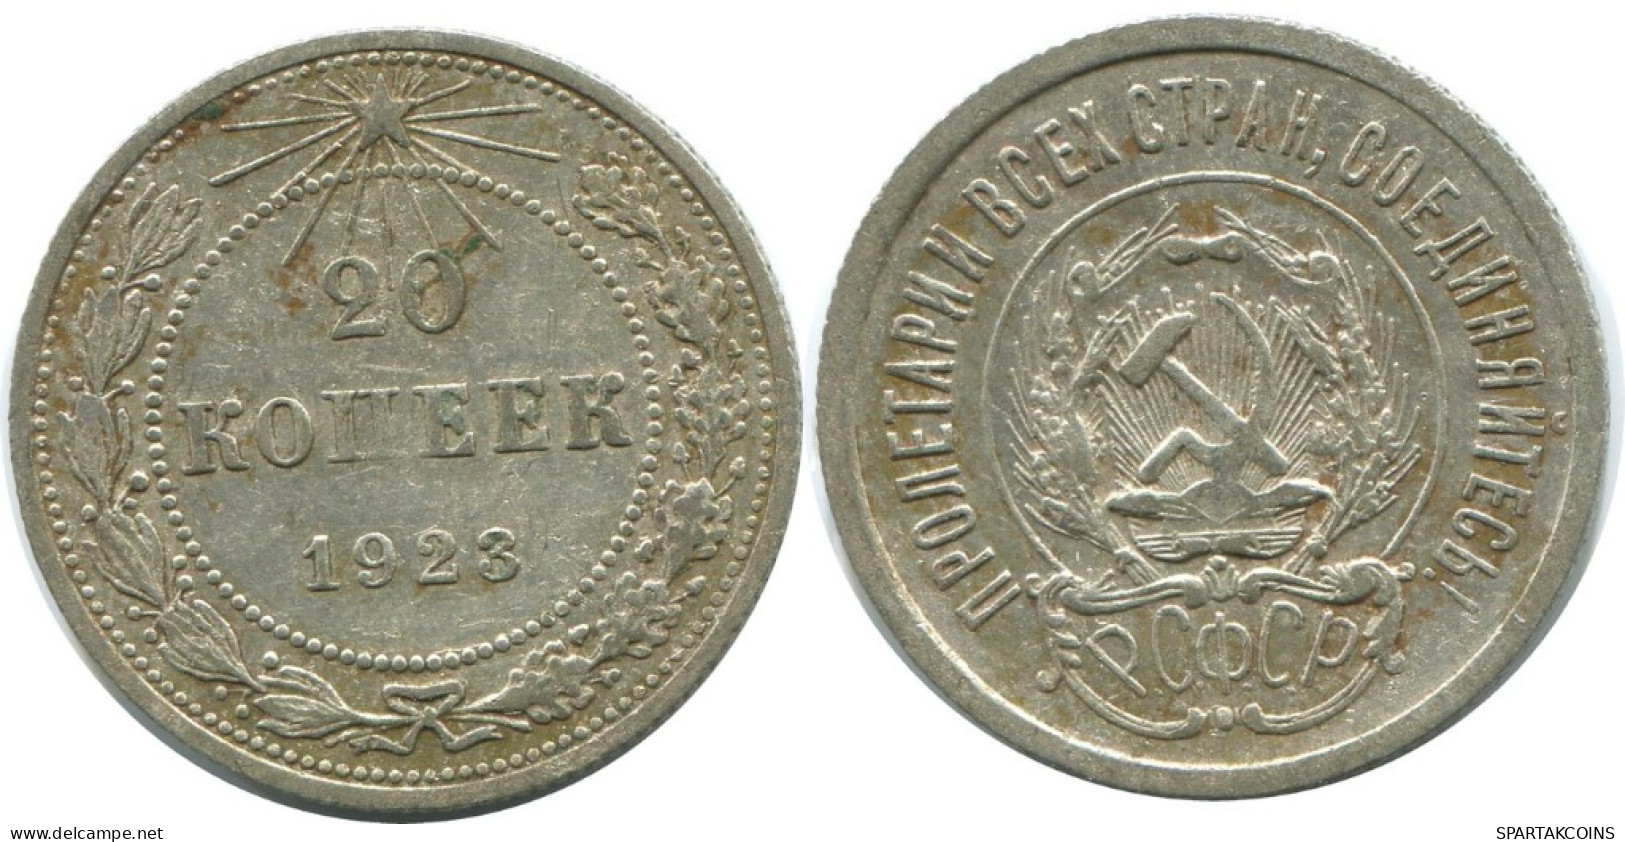 20 KOPEKS 1923 RUSSLAND RUSSIA RSFSR SILBER Münze HIGH GRADE #AF493.4.D.A - Rusia